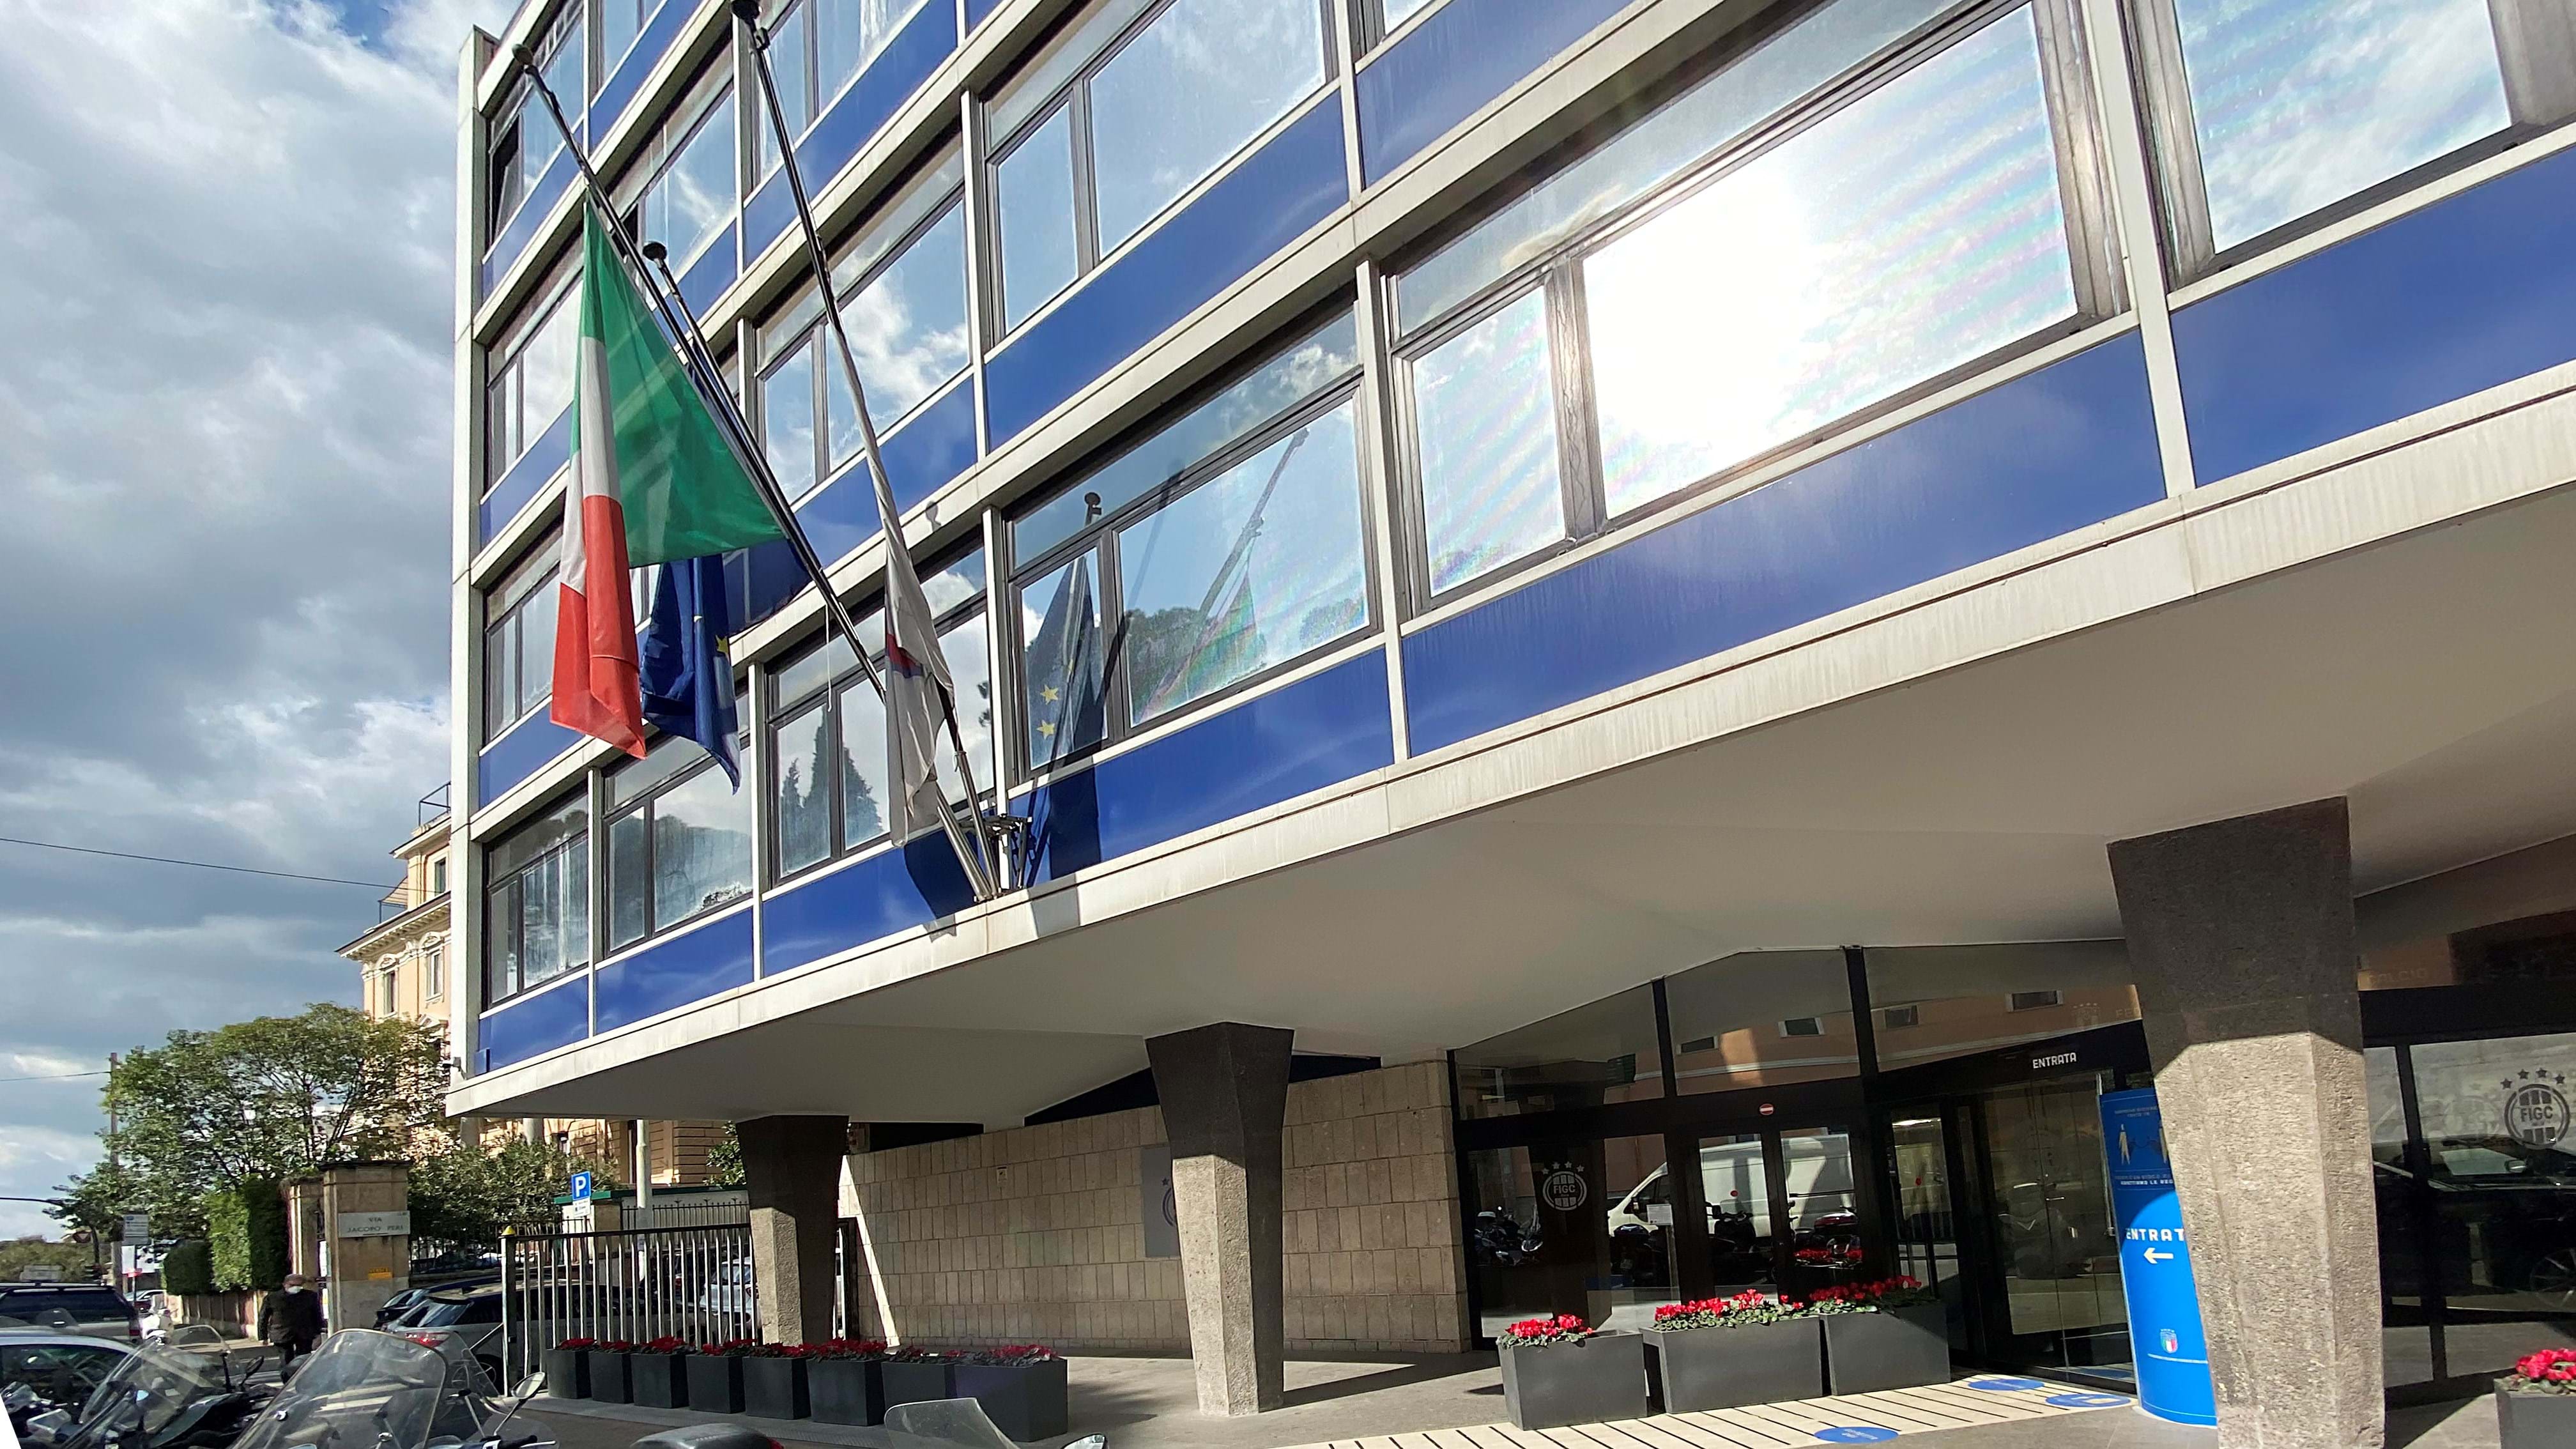 Vertice FIGC: Gravina chiede un incontro al Ministro Abodi